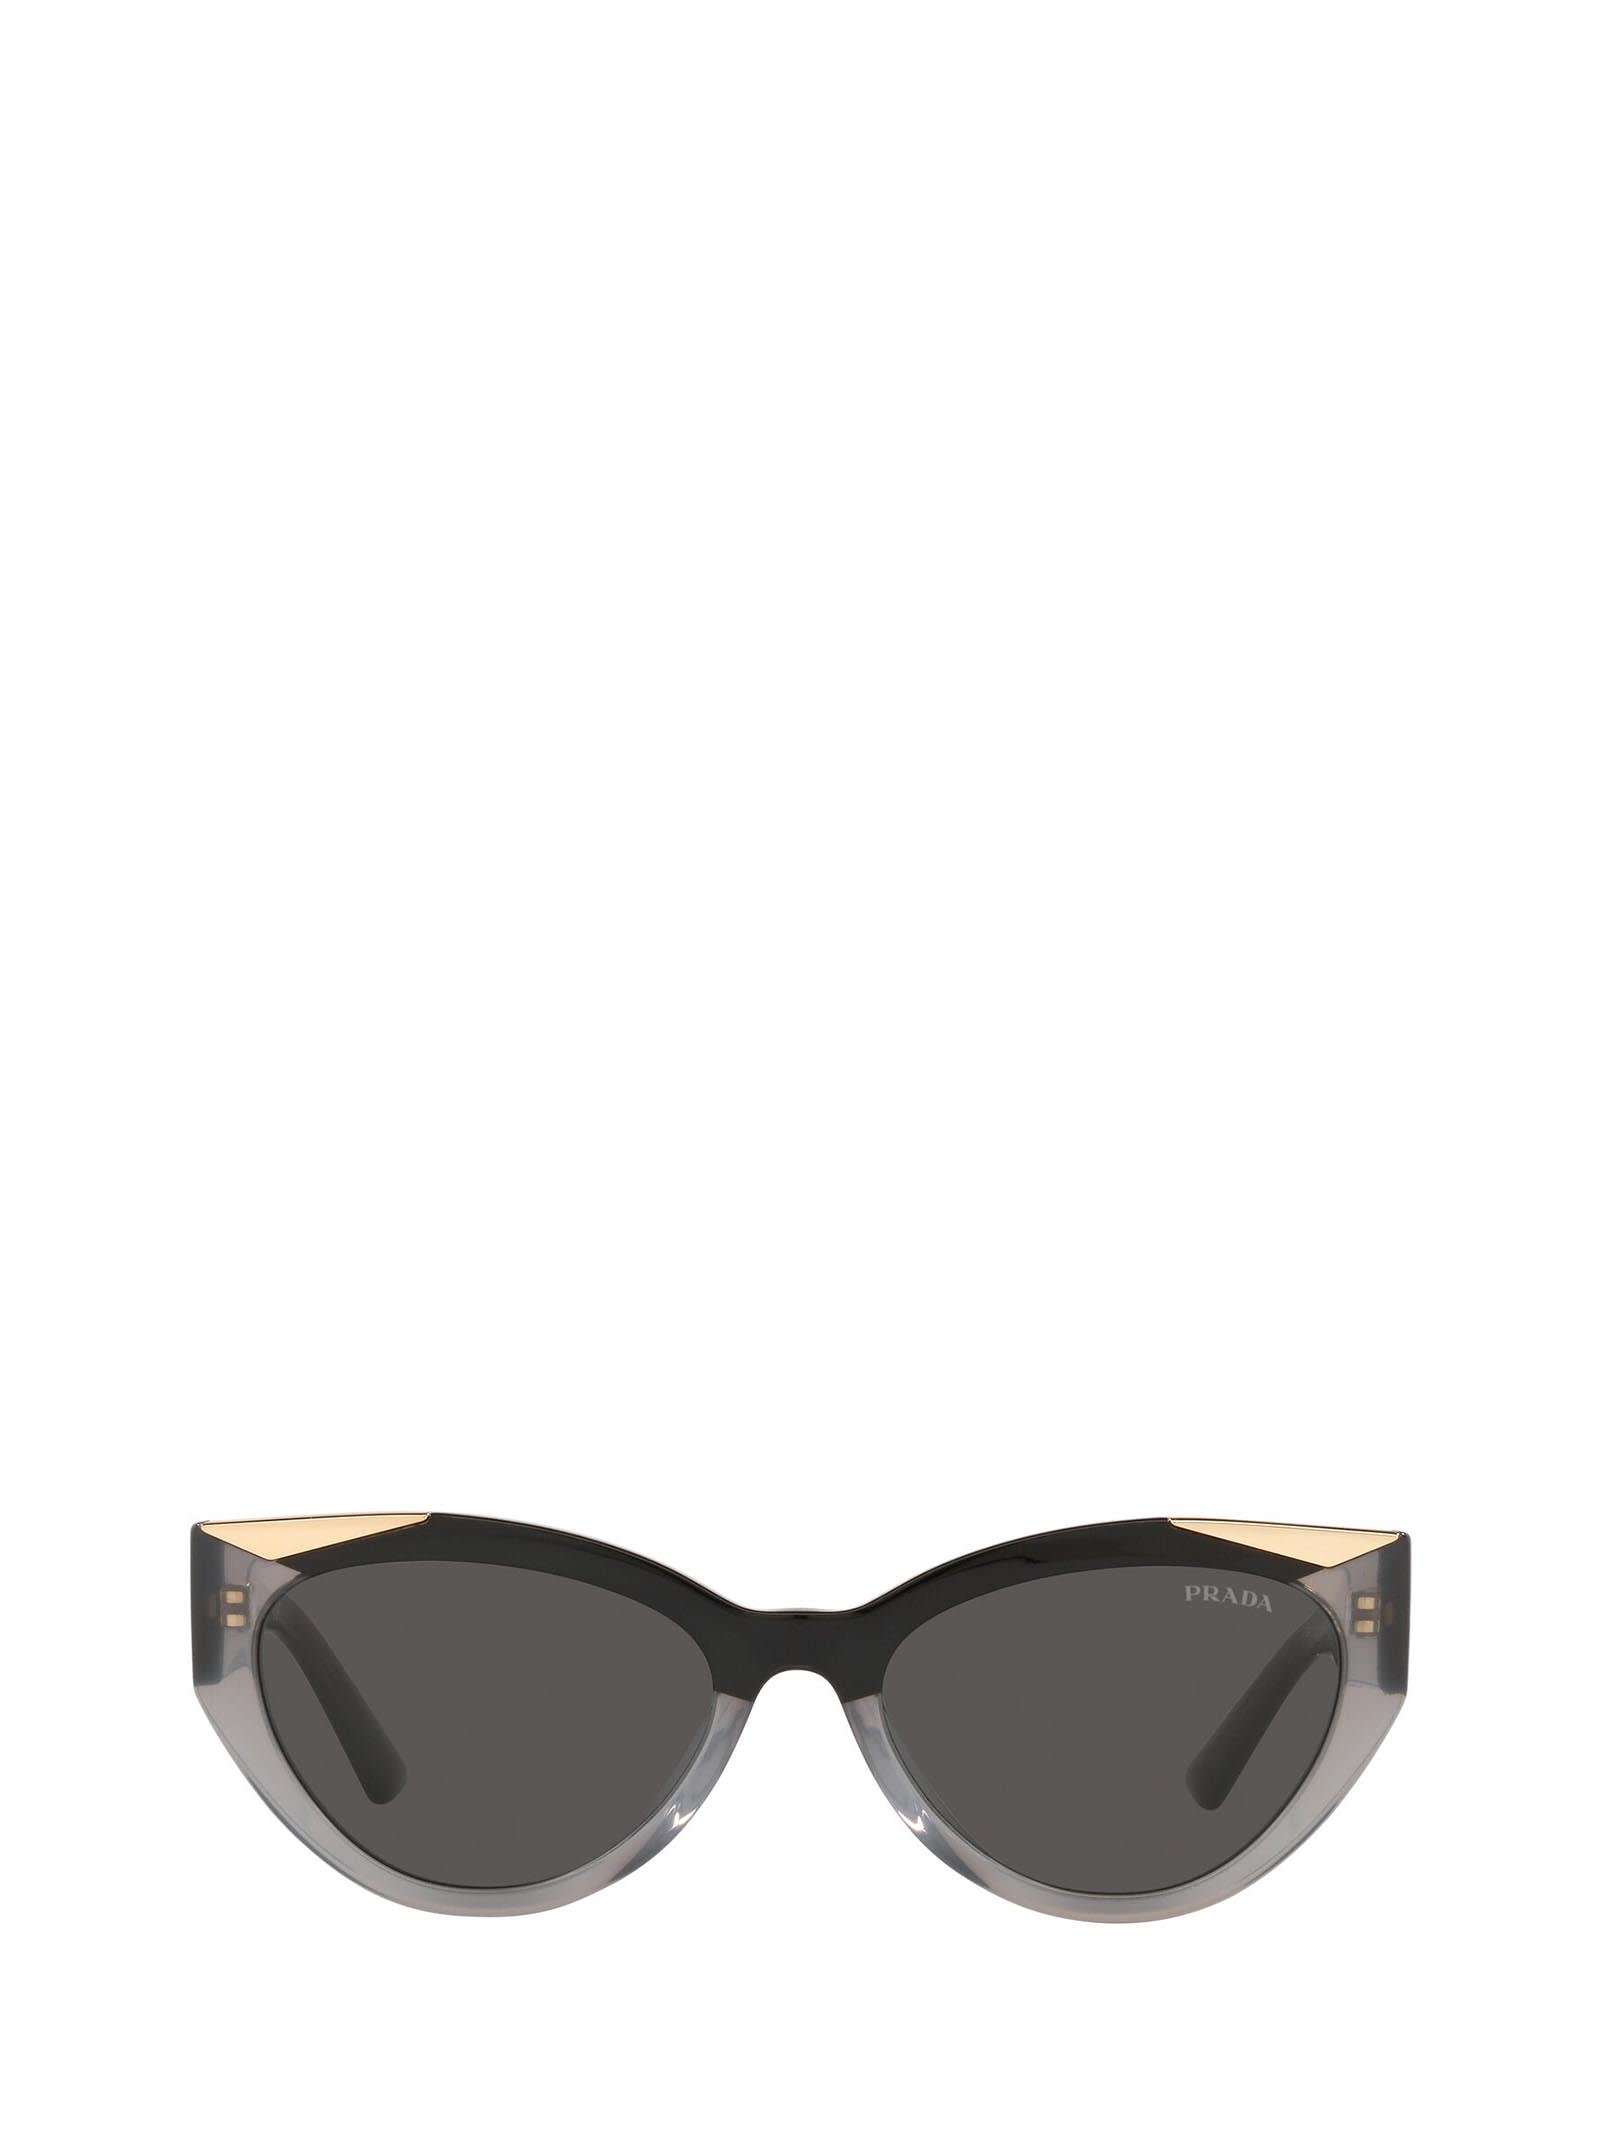 Prada Prada Pr 03ws Black & Opal Grey Sunglasses